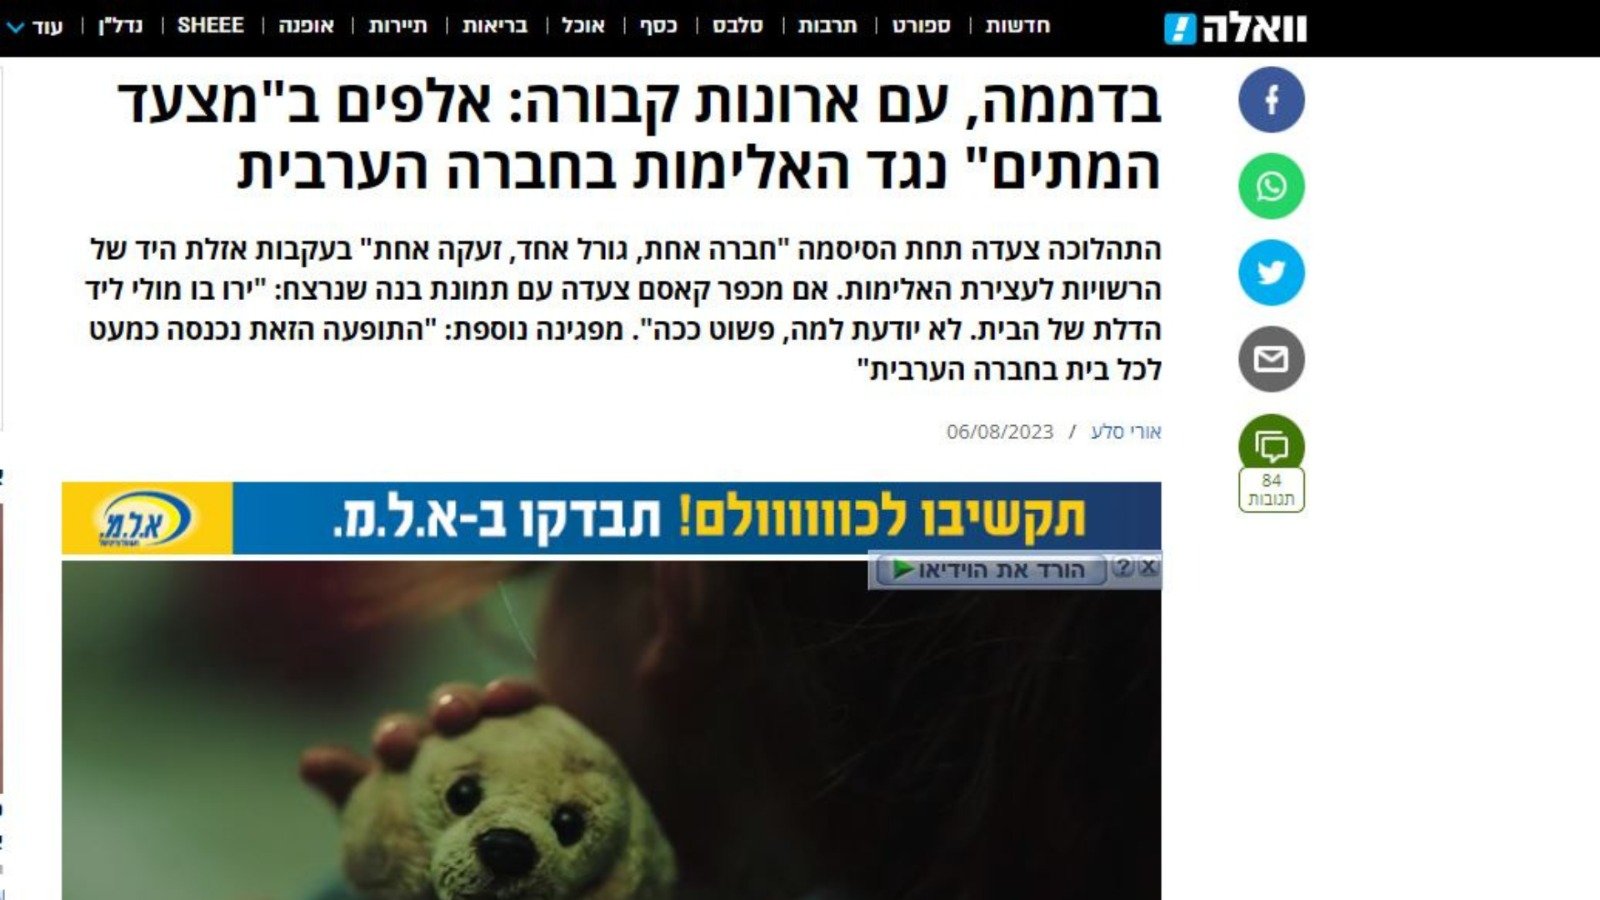 اجنبية، عبرية وعربية: تغطية اعلامية موسعة لـ "مسيرة الأموات"-3